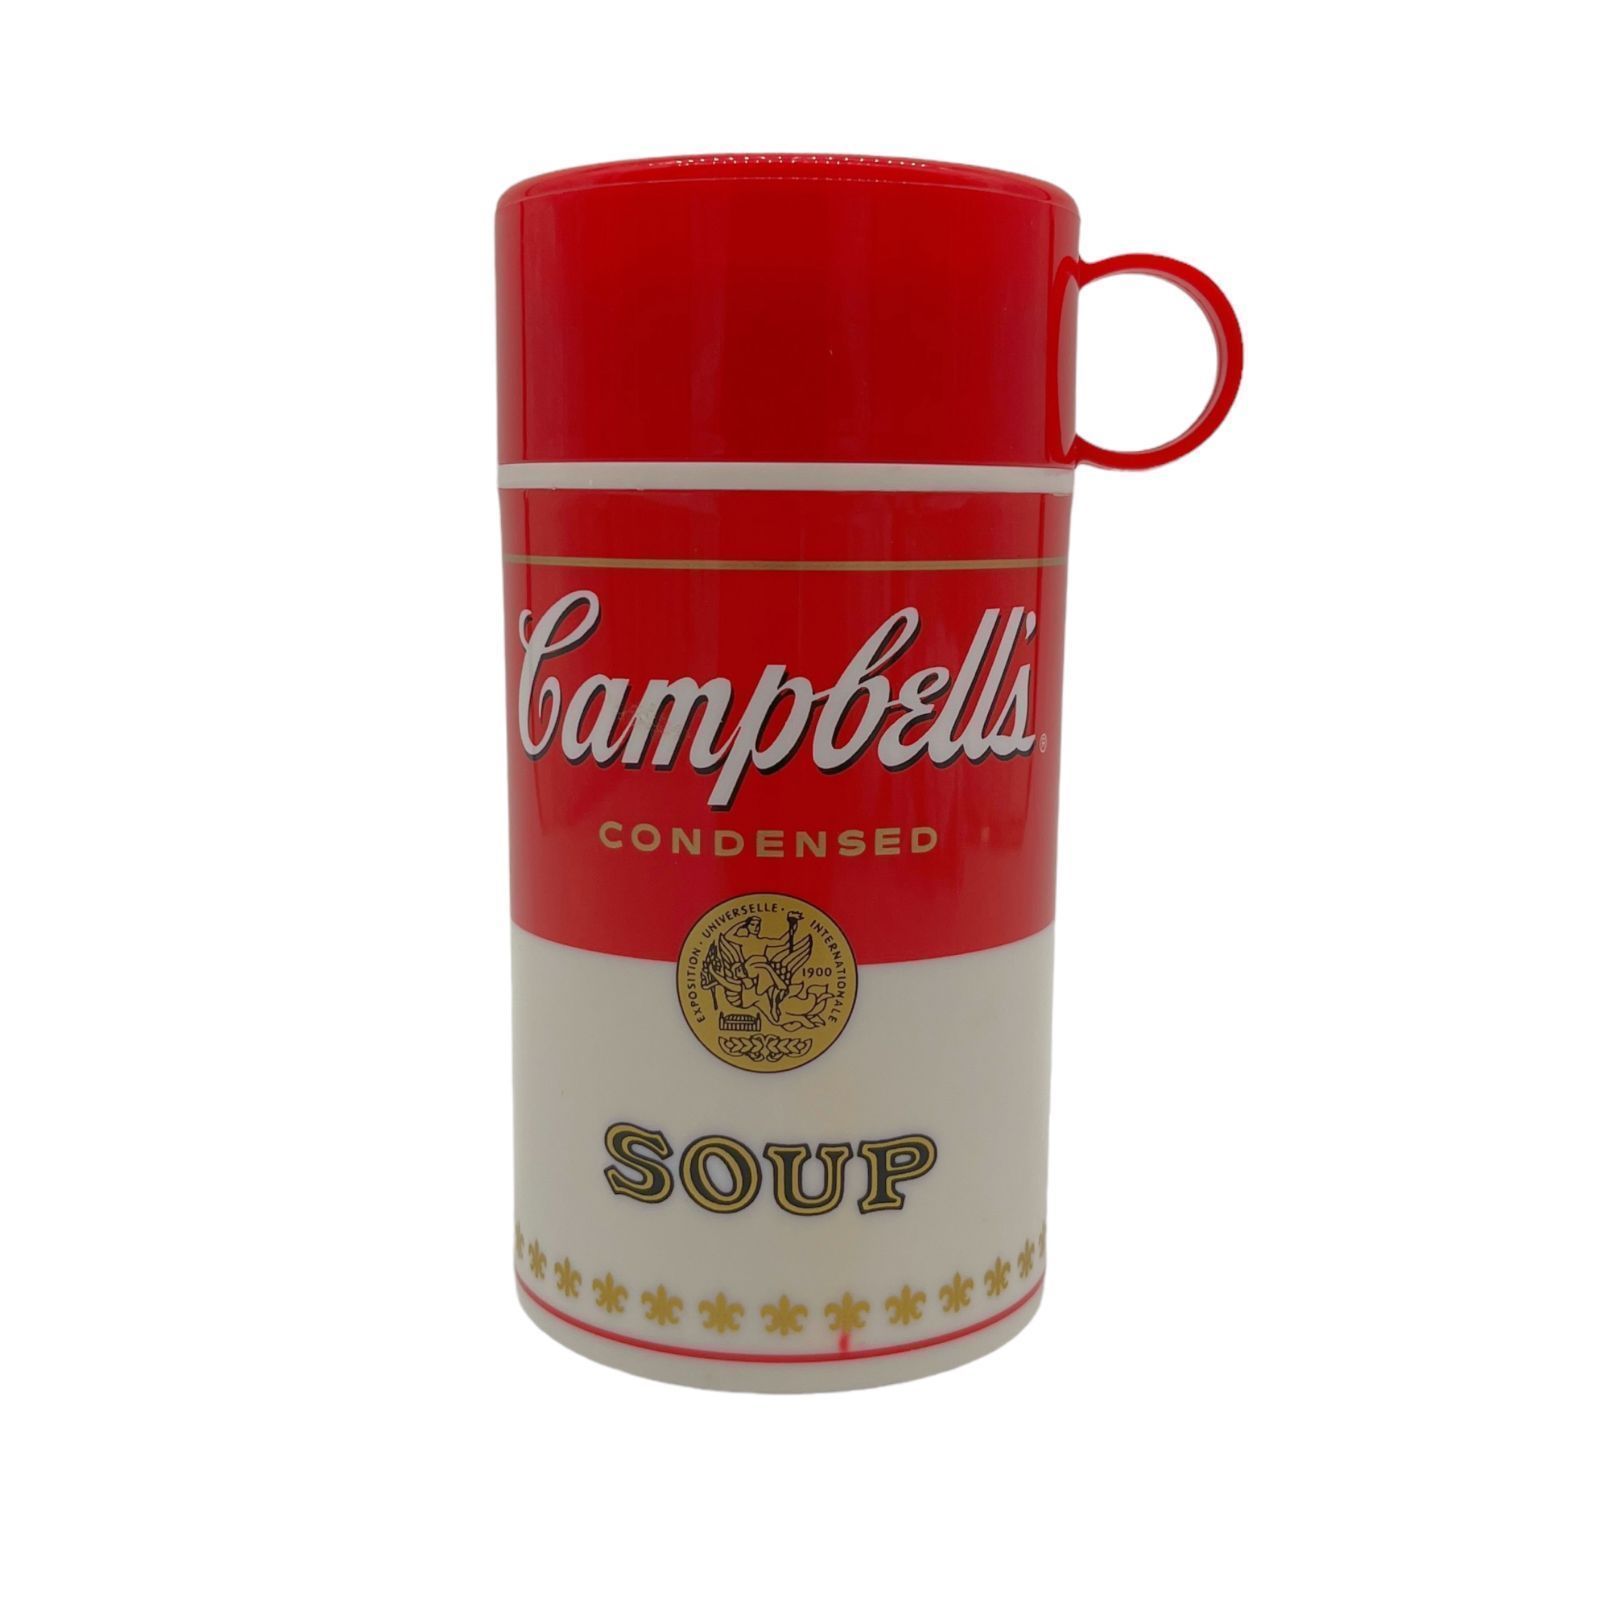 スープボトル】1999年製 Campbell Soup ボトル キャンベルスープ OLD GOLD (オールドゴールド) メルカリ